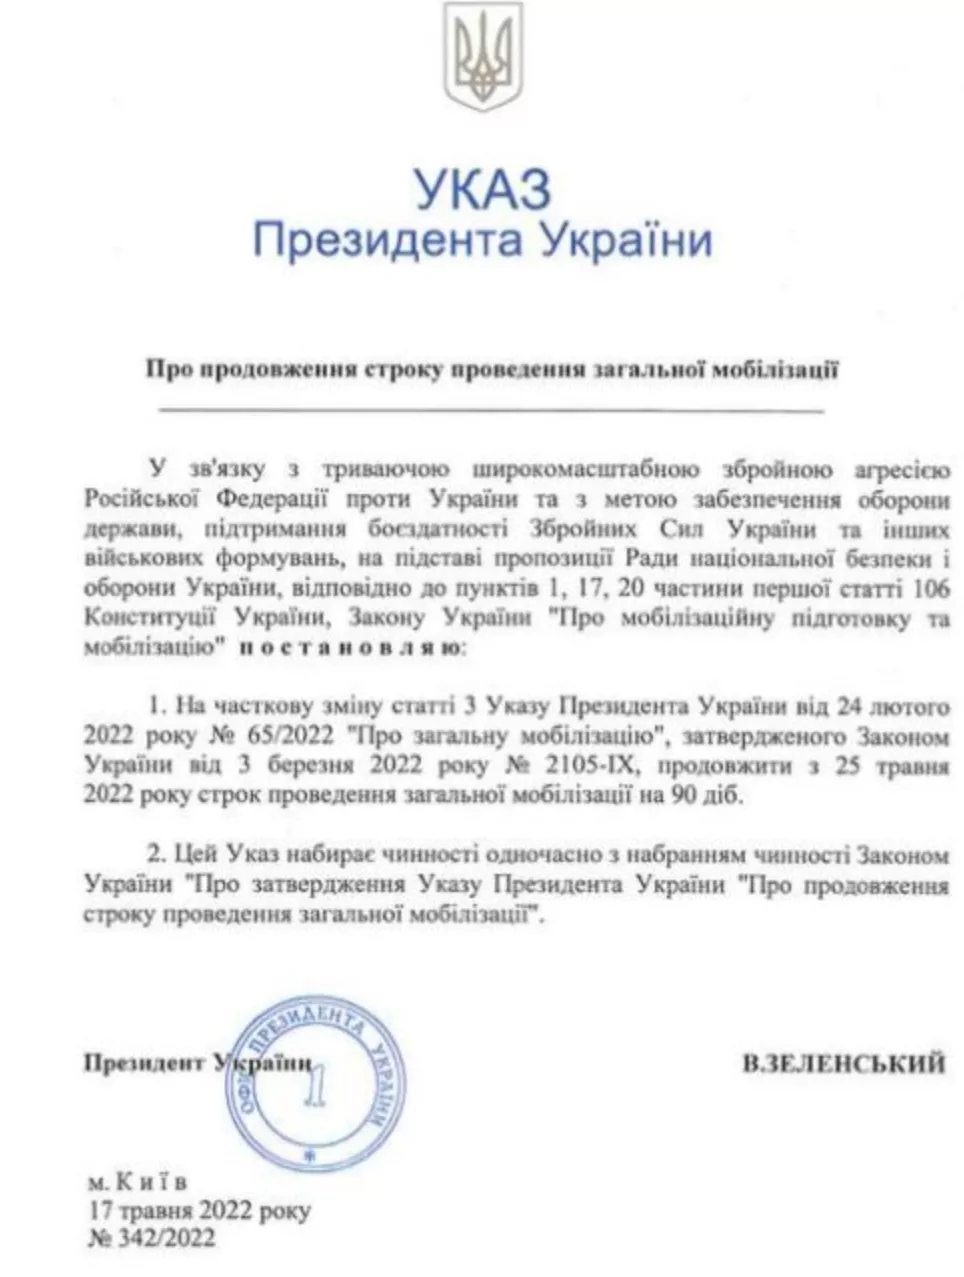 Указ Президента про продовження строку проведення загальної мобілізації.